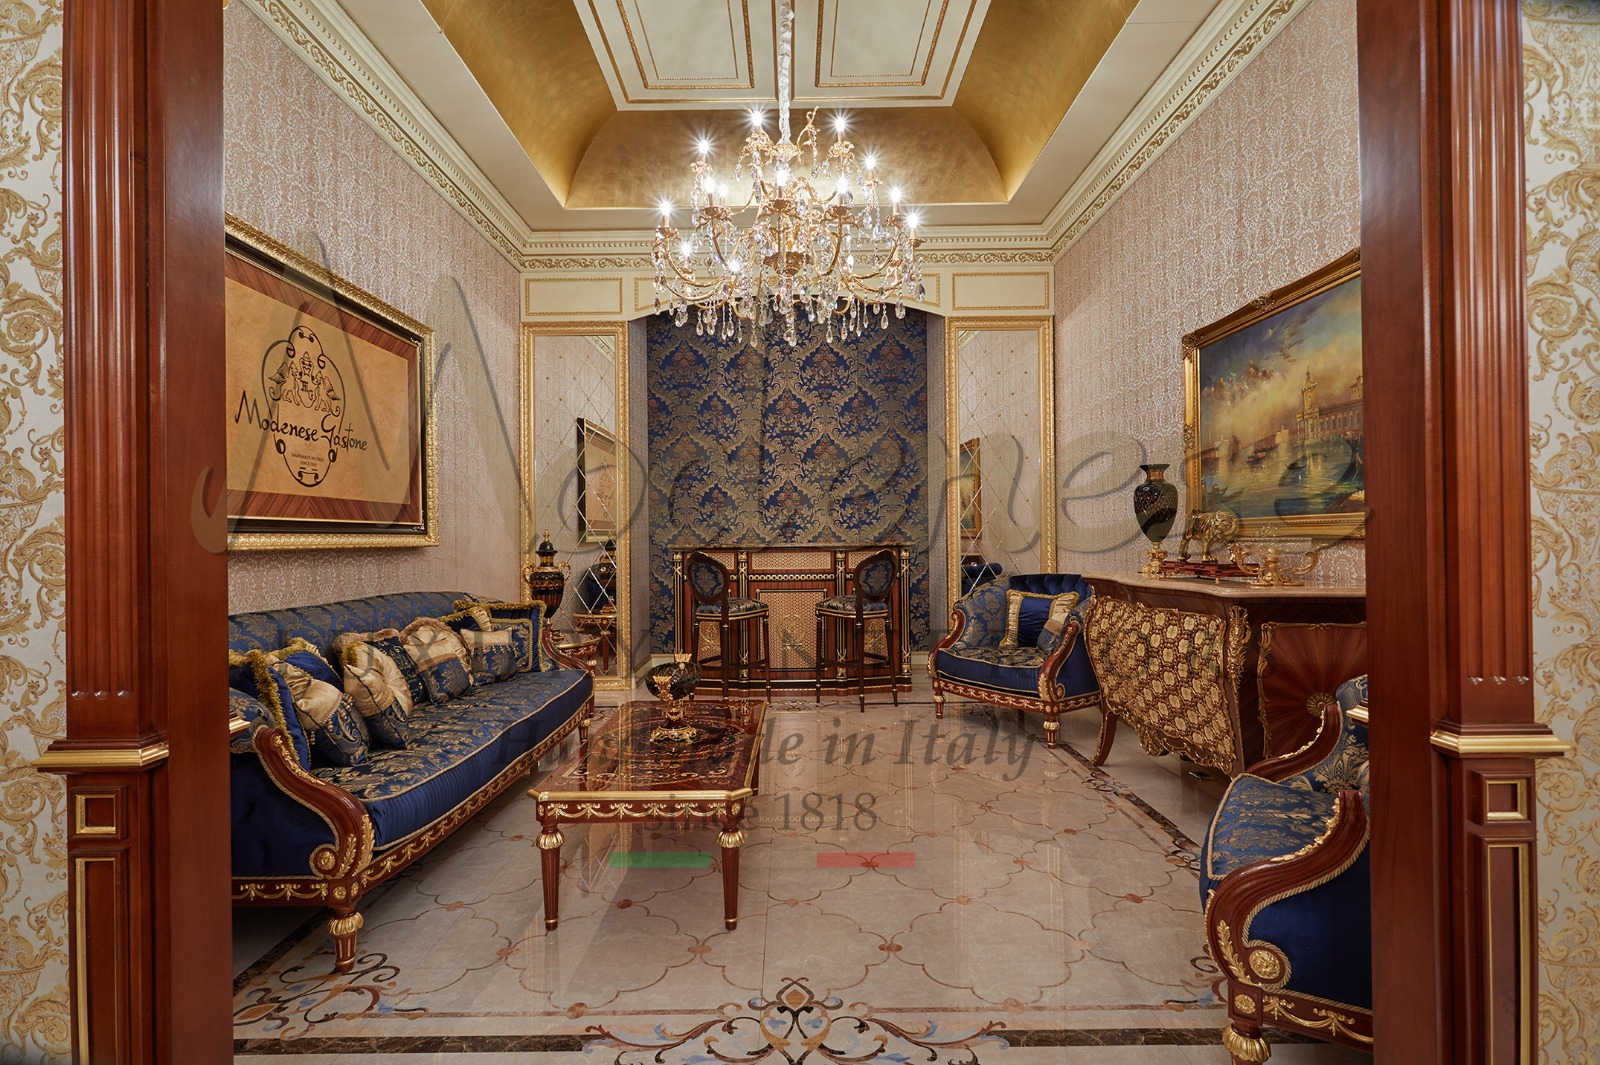 украшение дома роскошная классическая мебель проекты дизайна интерьера королевский дворец классный французский итальянский стиль аппликация сусального золота